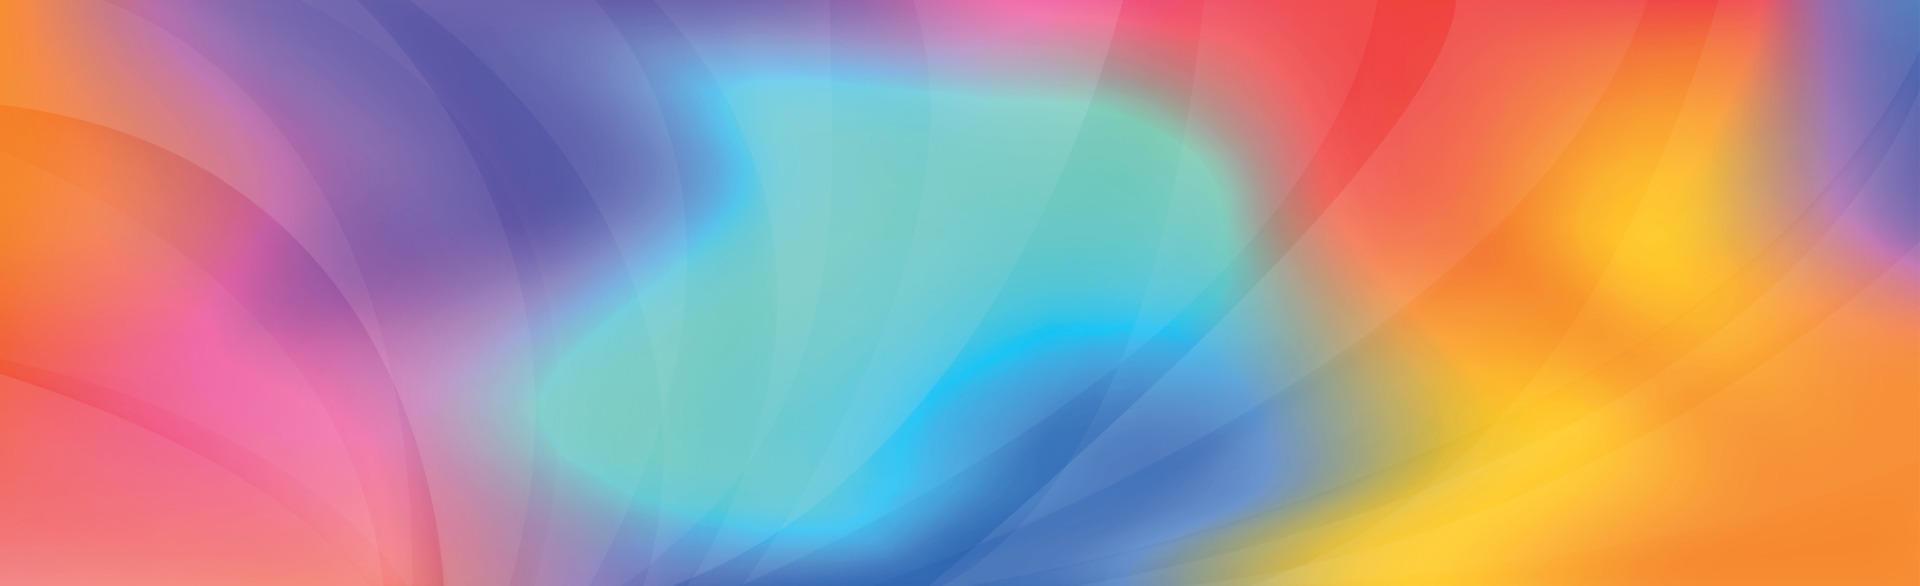 gradiente colorido de fundo web abstrato panorâmico - vetor